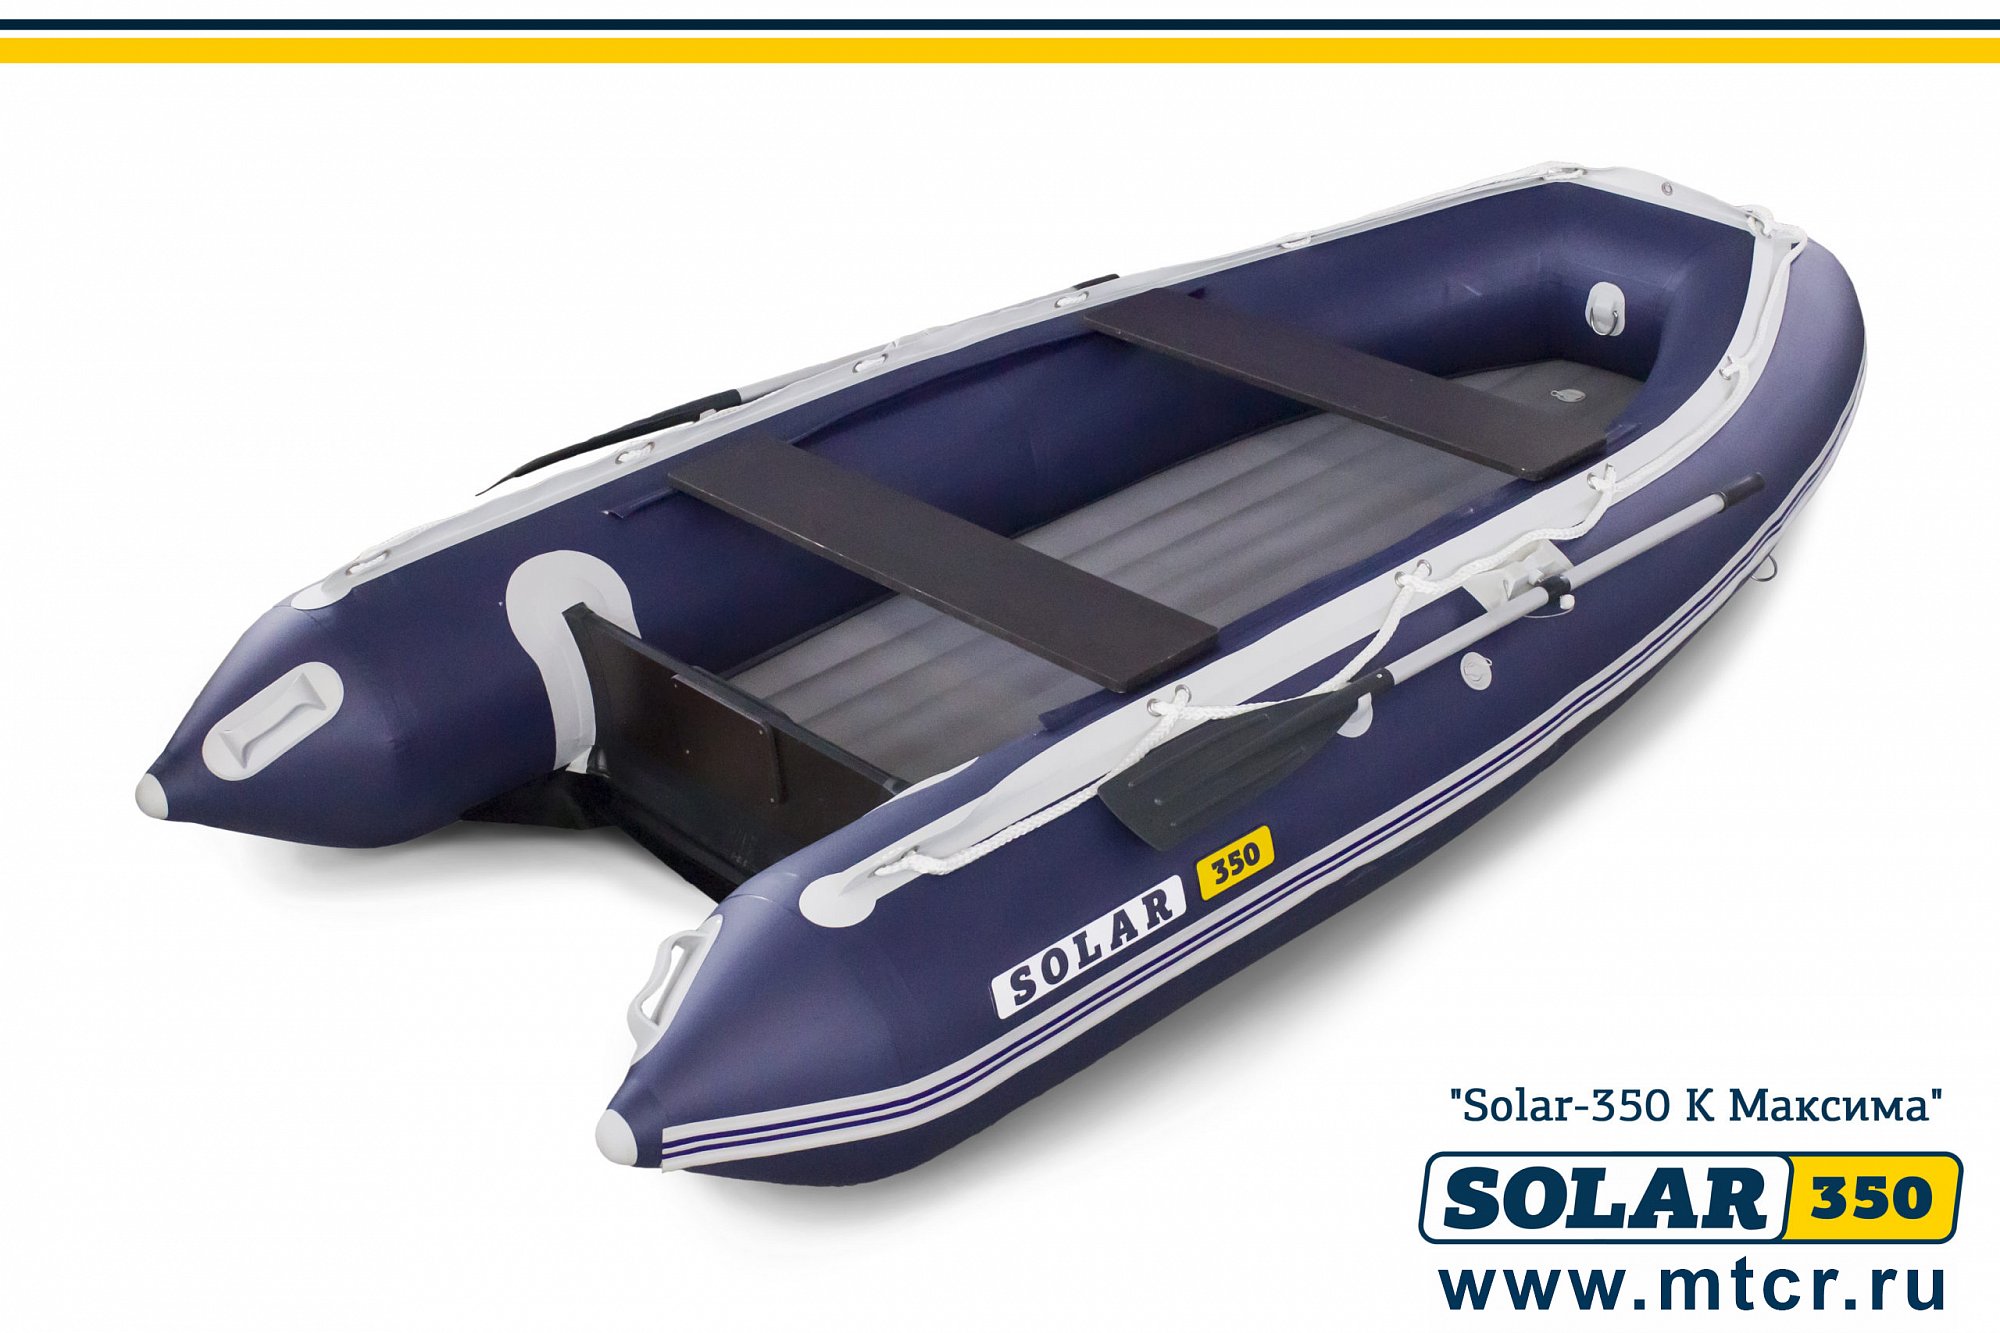 Лодки пвх нднд солар. Лодка надувная Солар Максима-350. Лодка ПВХ Solar-350 к (Максима). Моторная надувная лодка Solar 350. Лодка ПВХ Солар 350.